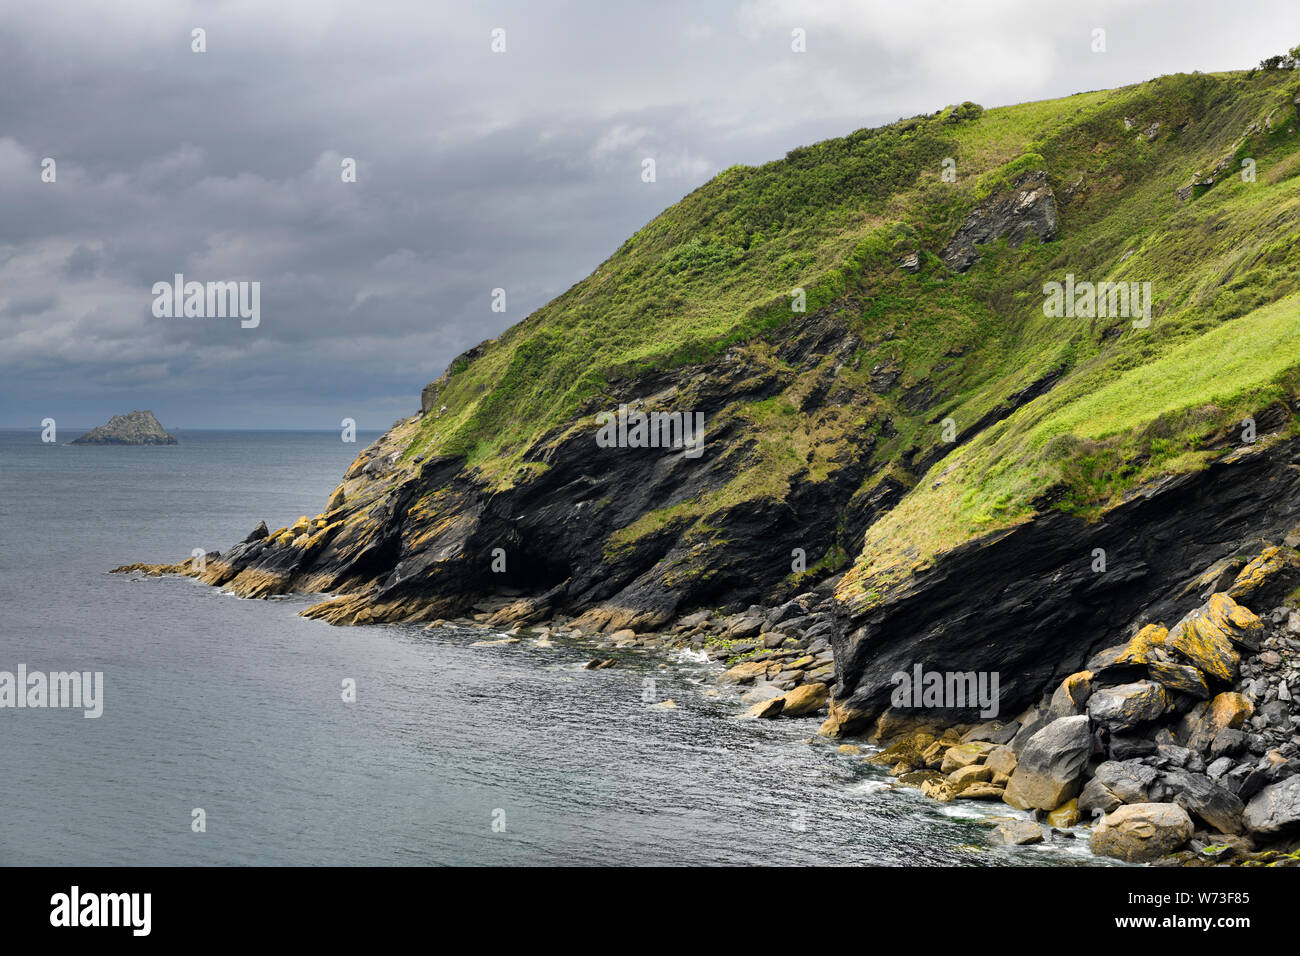 Les falaises et la mer au sud de l'île Portloe dans près de Veryan sur le Littoral du patrimoine Roseland sur l'océan Atlantique, l'Angleterre Cornwall Banque D'Images